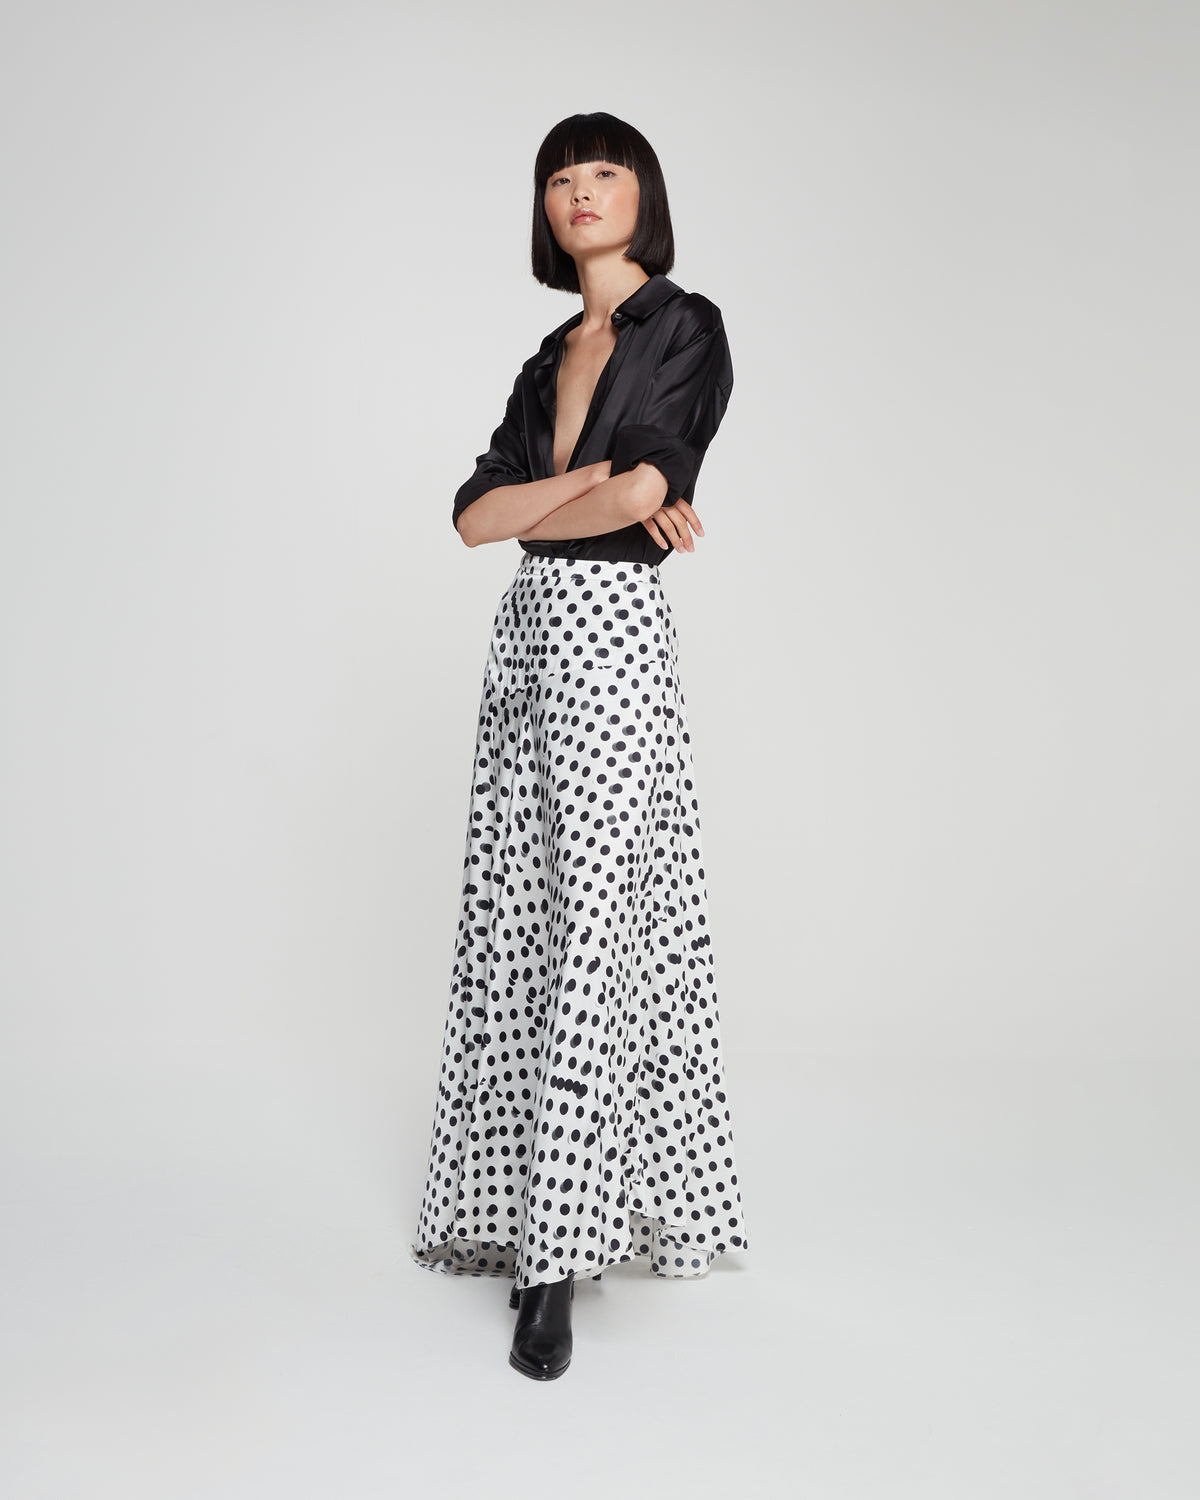 Graphic Polka Dot Asymmetric Maxi Skirt - White/Black SERENA BUTE